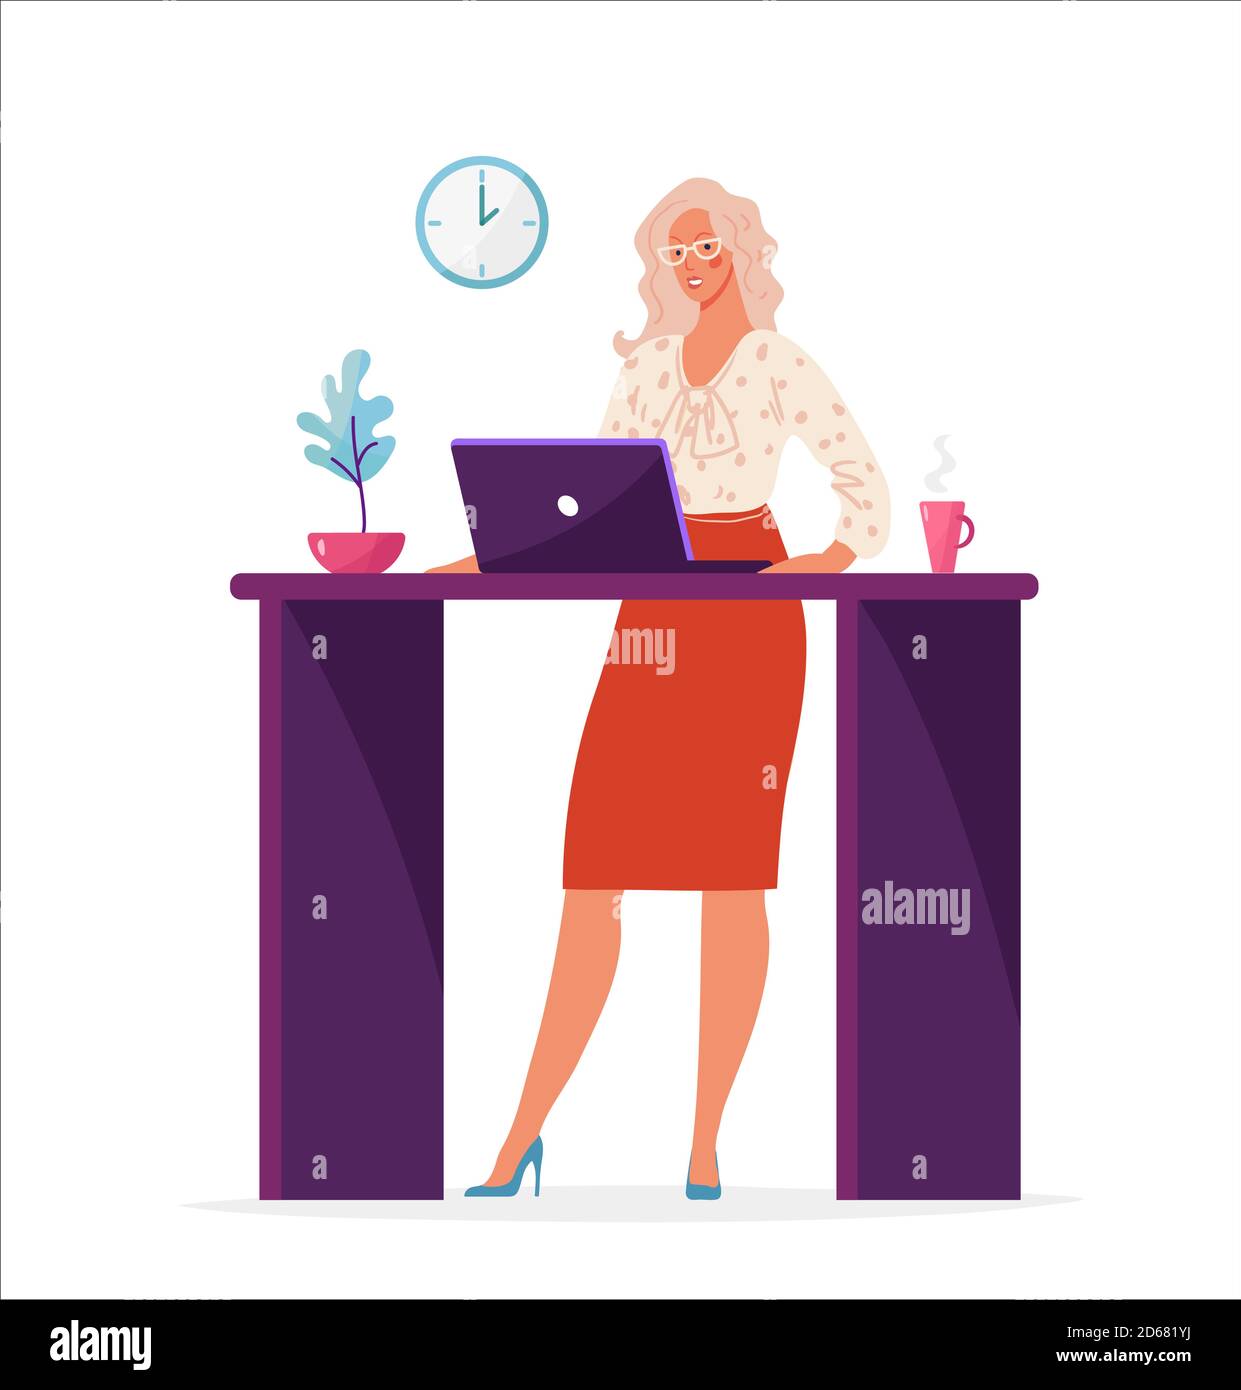 Nette Frau im Büro arbeitet am Tisch mit einem Computer. Weibliche Zeichentrickfigur für Unternehmen, weibliche Karriere, Arbeit Mitarbeiter. Flache Vektorgrafik isoliert auf weißem Hintergrund Stock Vektor